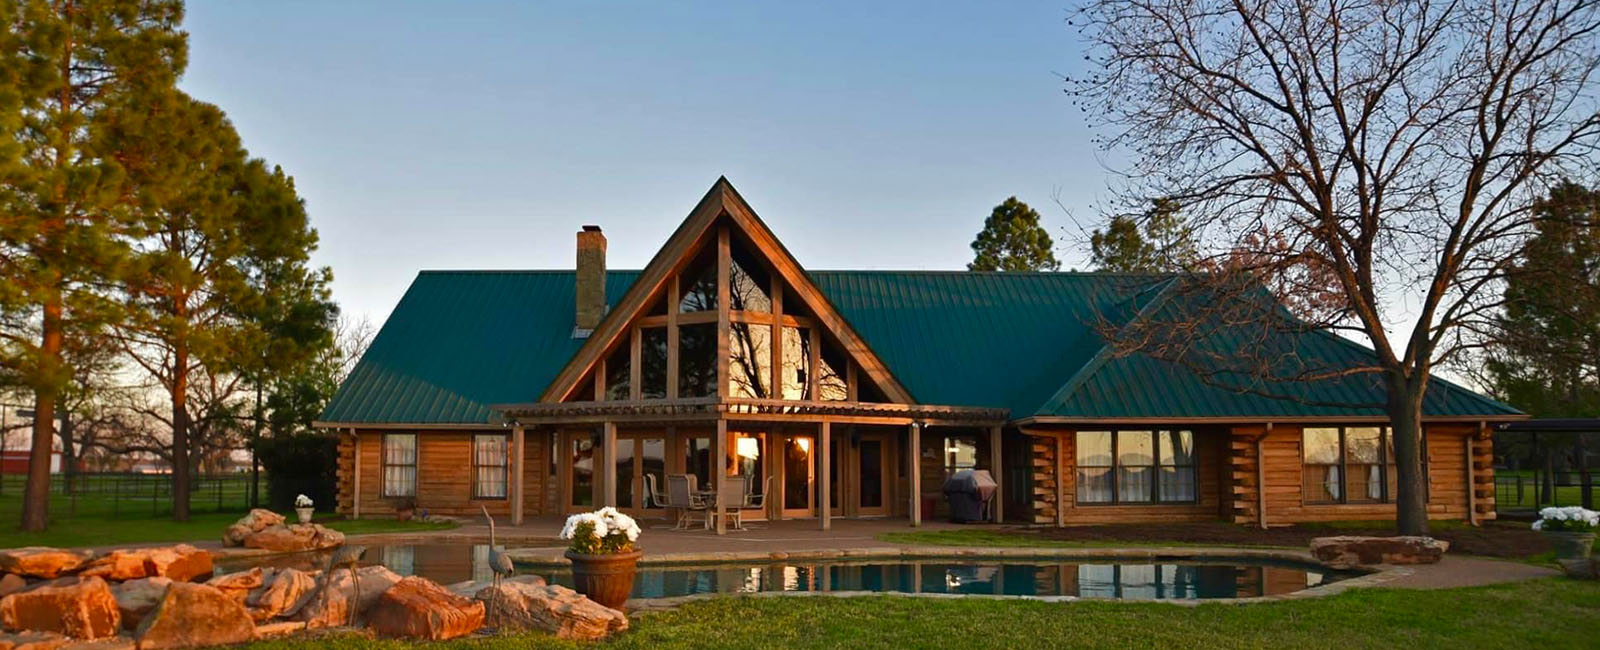 Circle 9 Ranch: A Real Log Home Texas Retreat